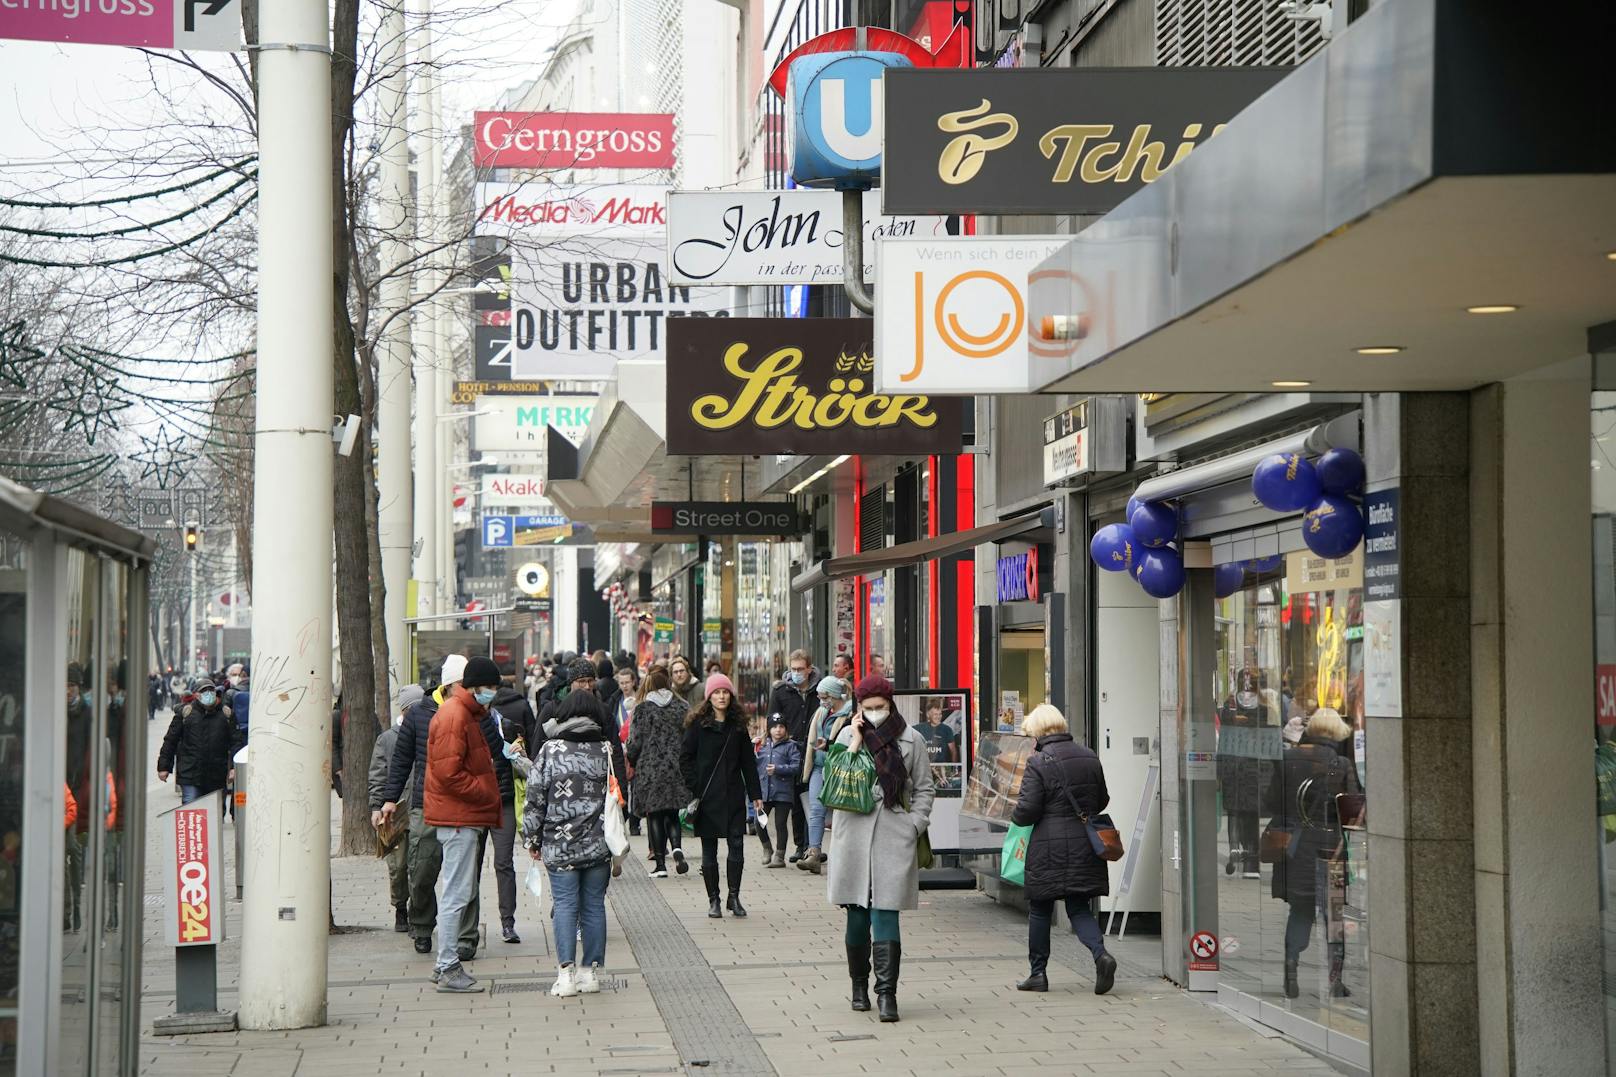 Die Coronakrise hat den Wiener Handel schwer getroffen. Die ÖVP Wien ruft nun mit einer Kampagne zum lokalen Geschenke shoppen in Wien auf.